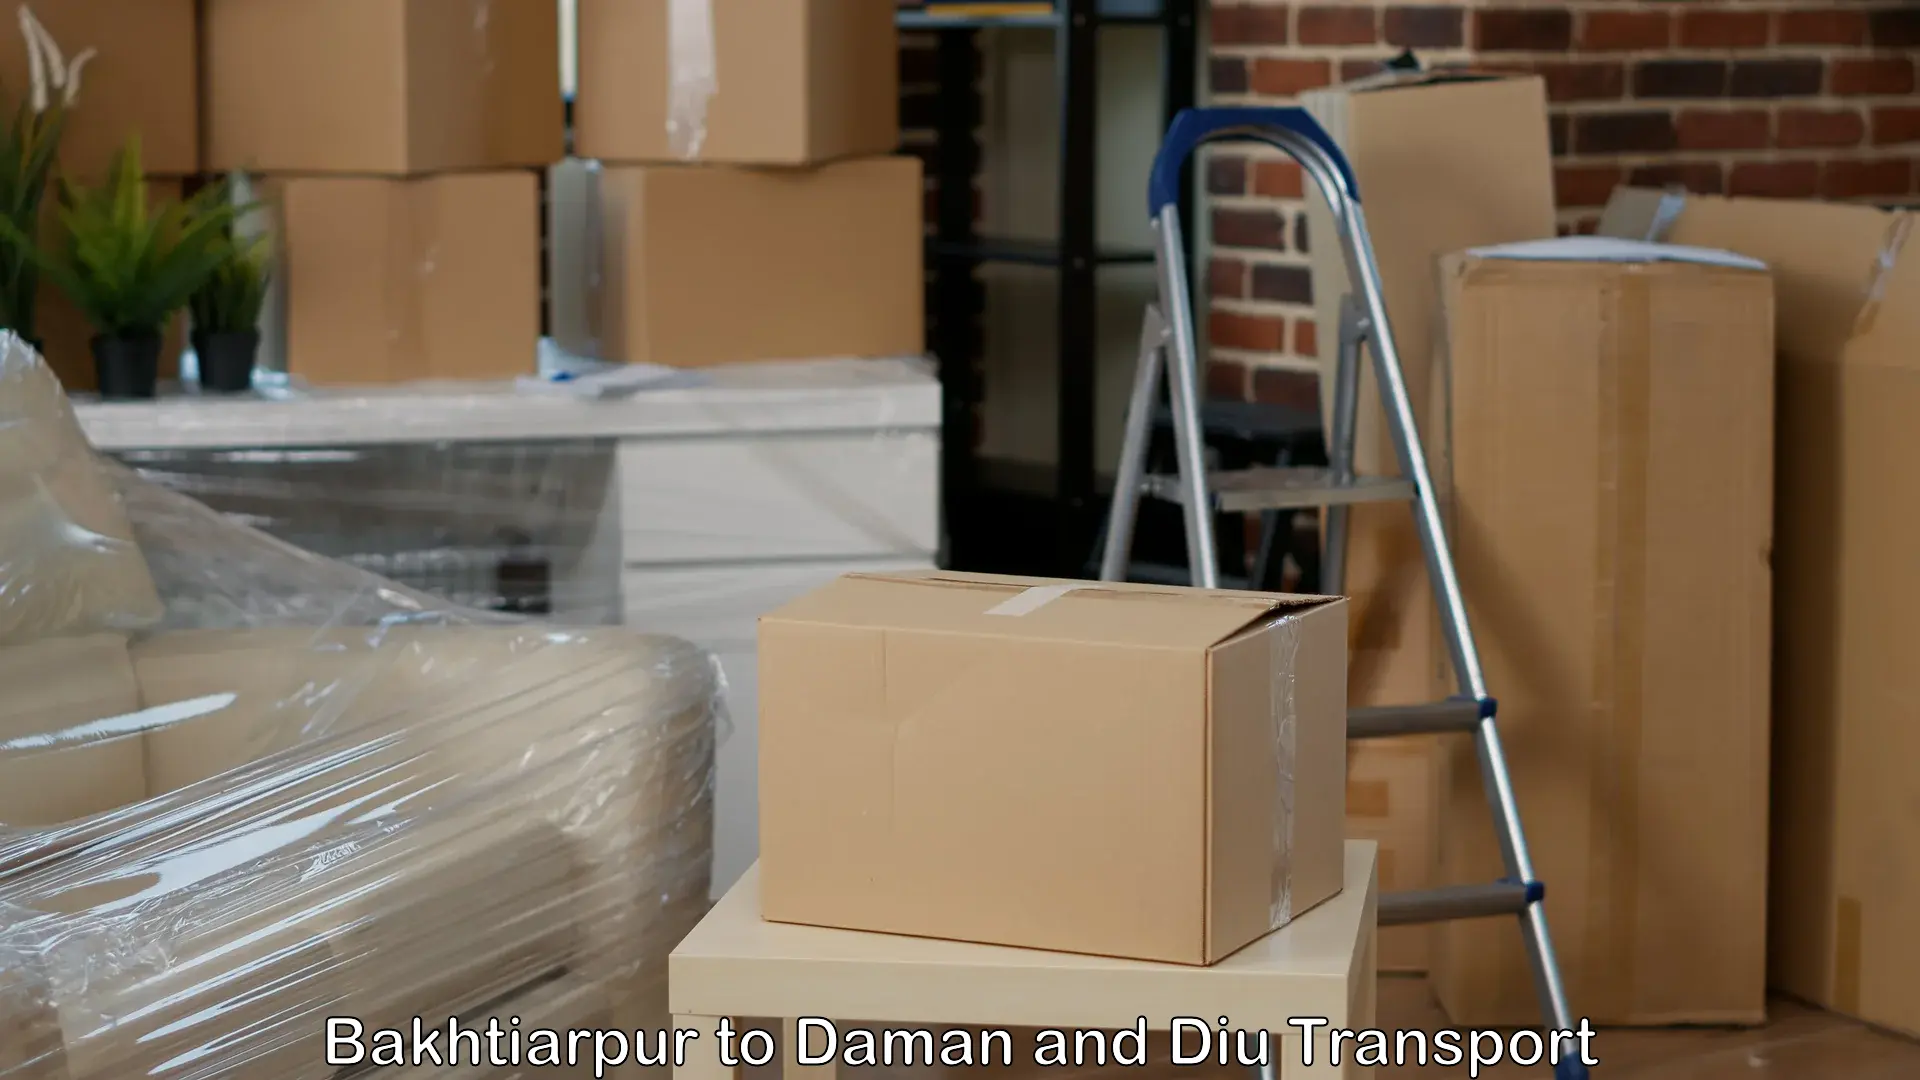 Shipping partner Bakhtiarpur to Daman and Diu